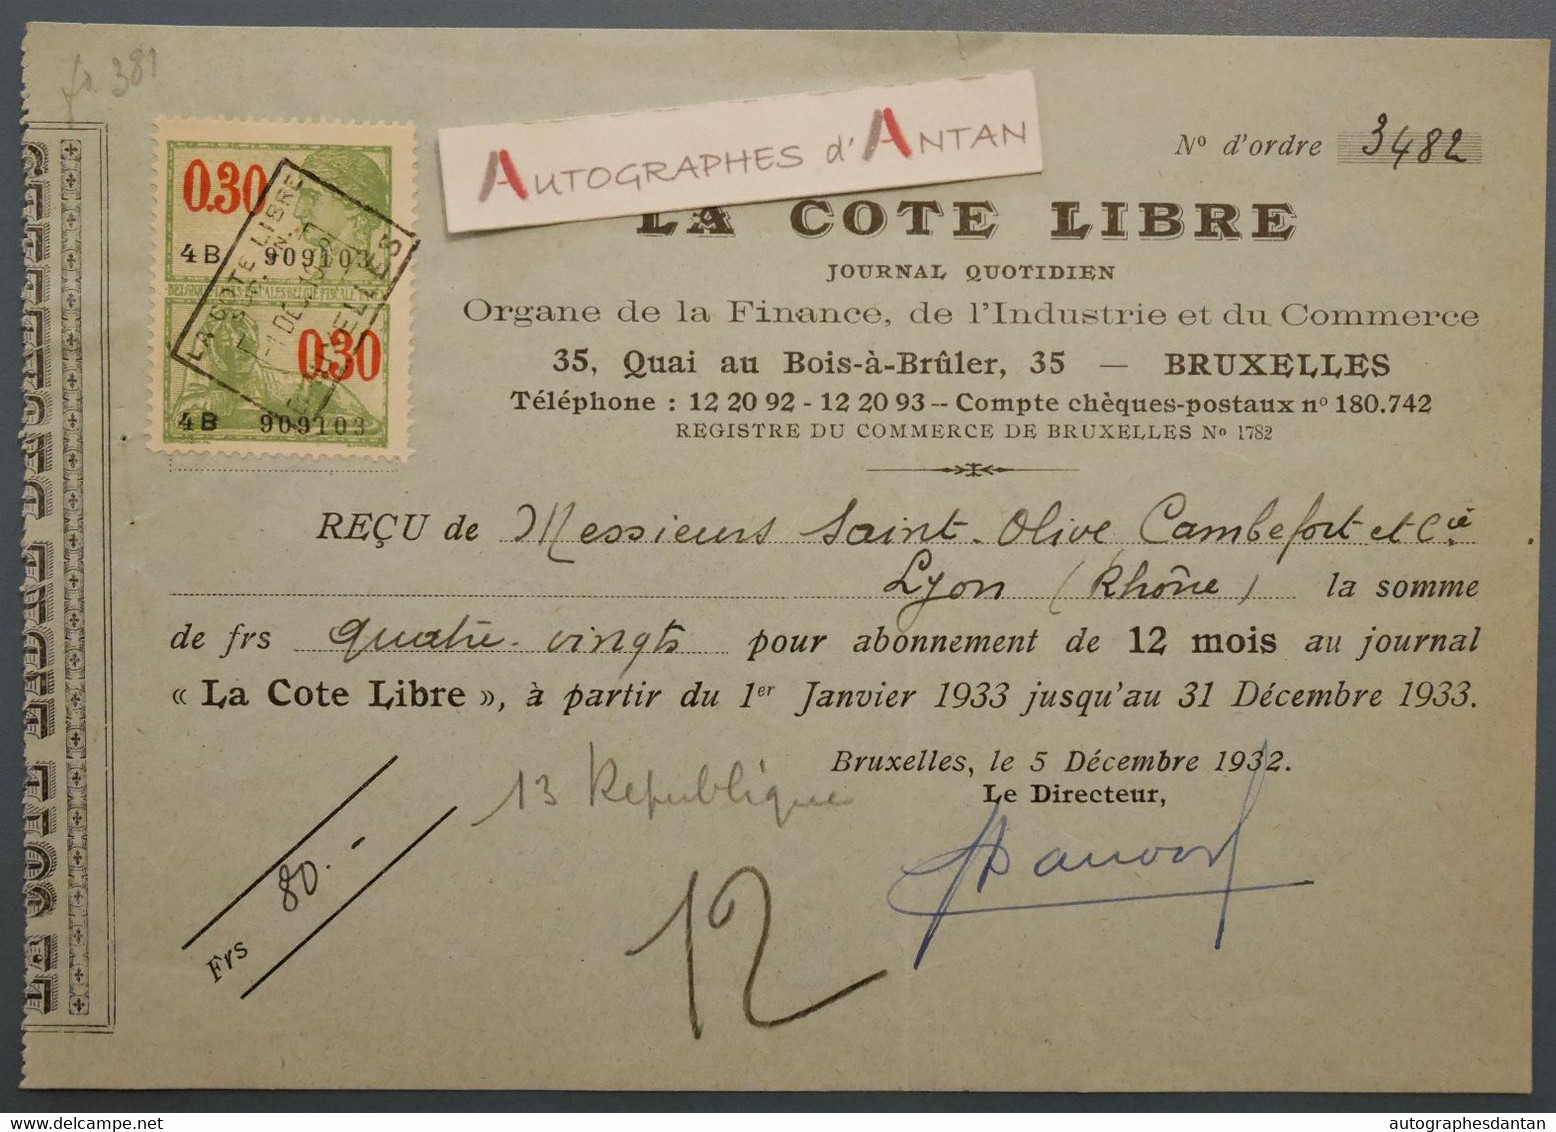 1932 Bruxelles La Cote Libre Journal Quotidien - Reçu Mrs Saint Olive Cambefort à Lyon - France Belgique - Timbre Fiscal - Bank & Versicherung